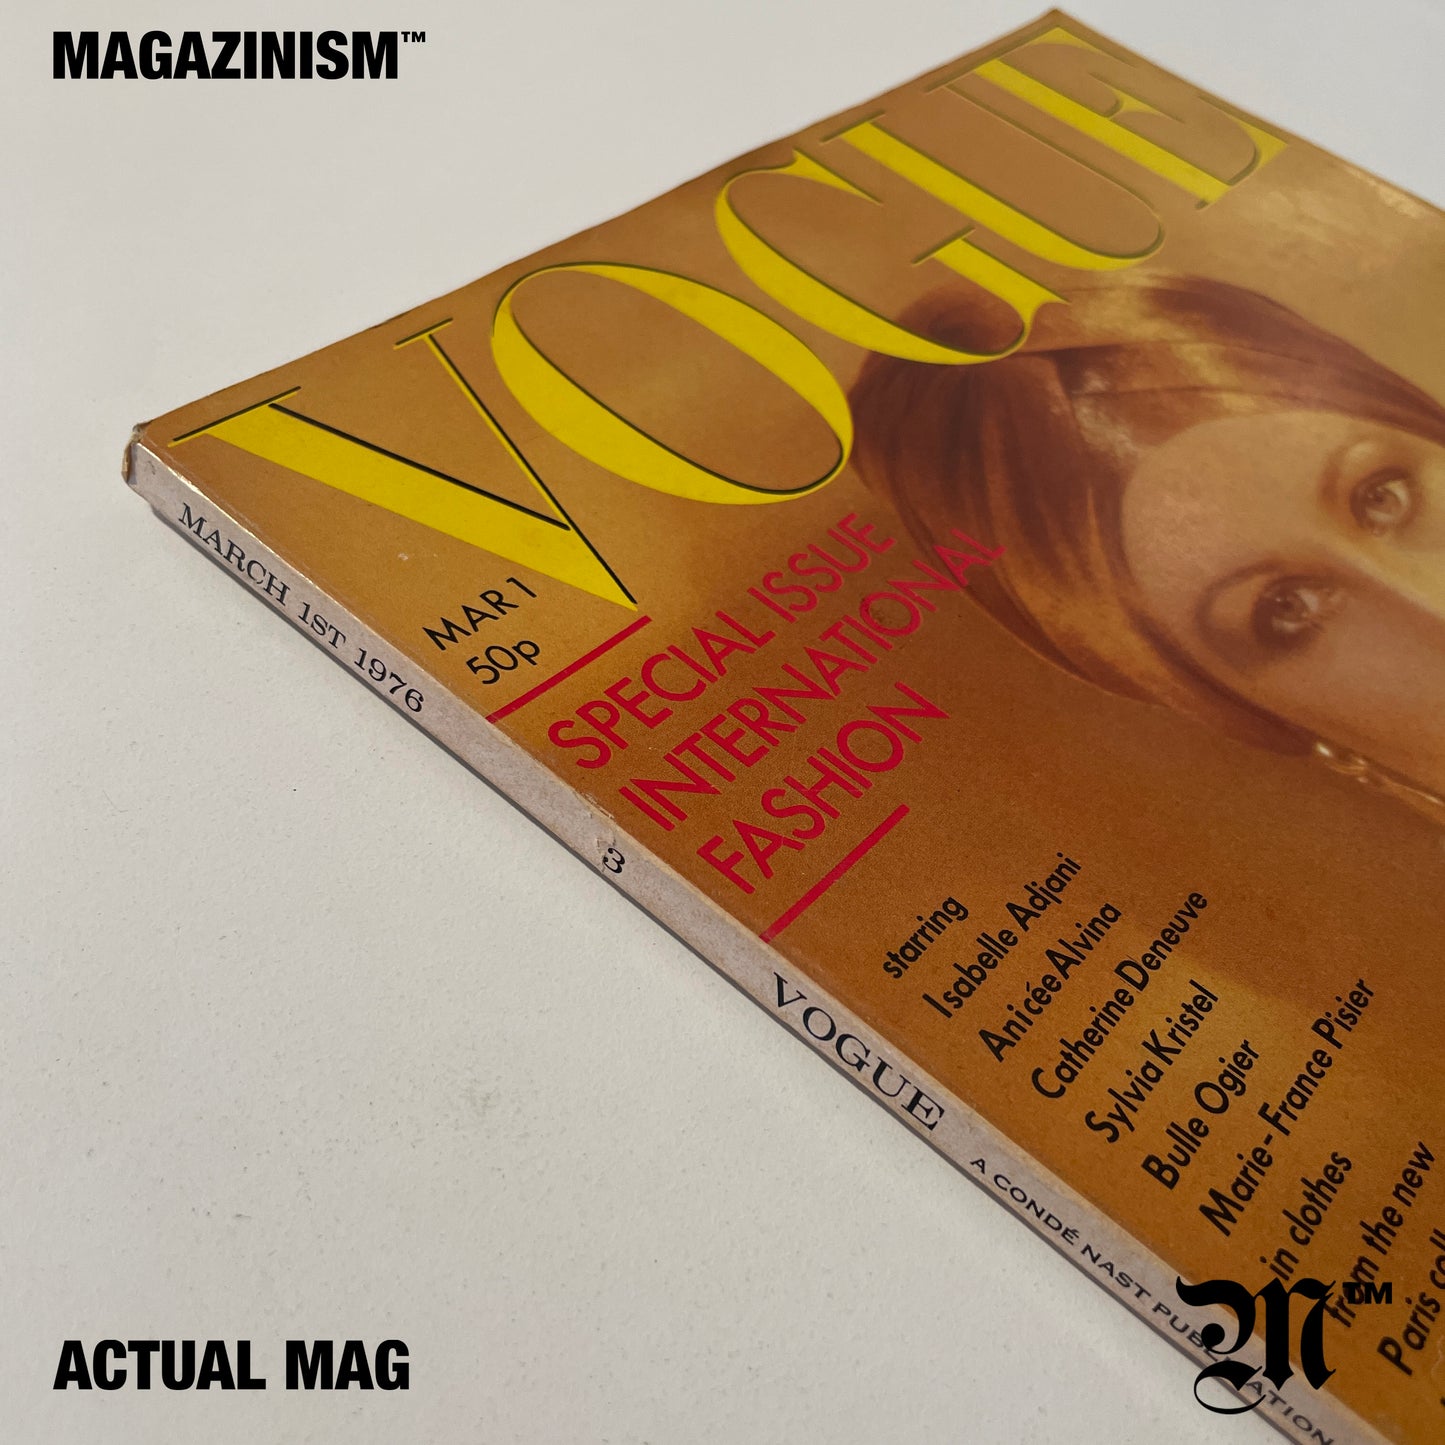 Vogue Magazine 1976 March